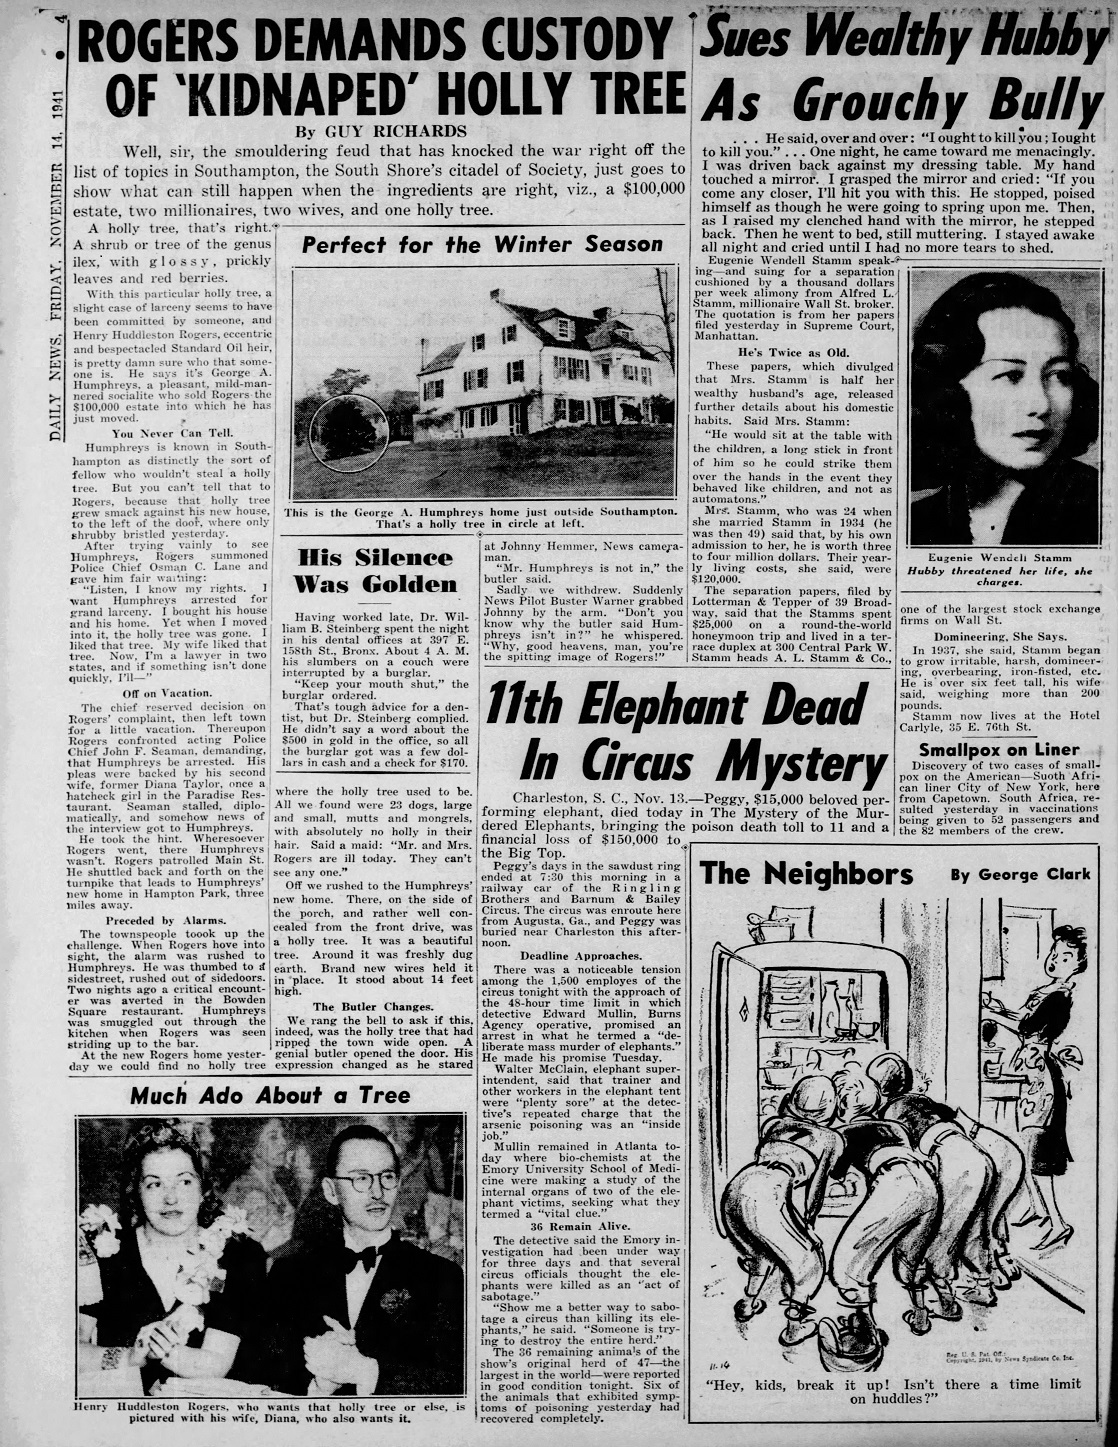 Daily_News_Fri__Nov_14__1941_.jpg